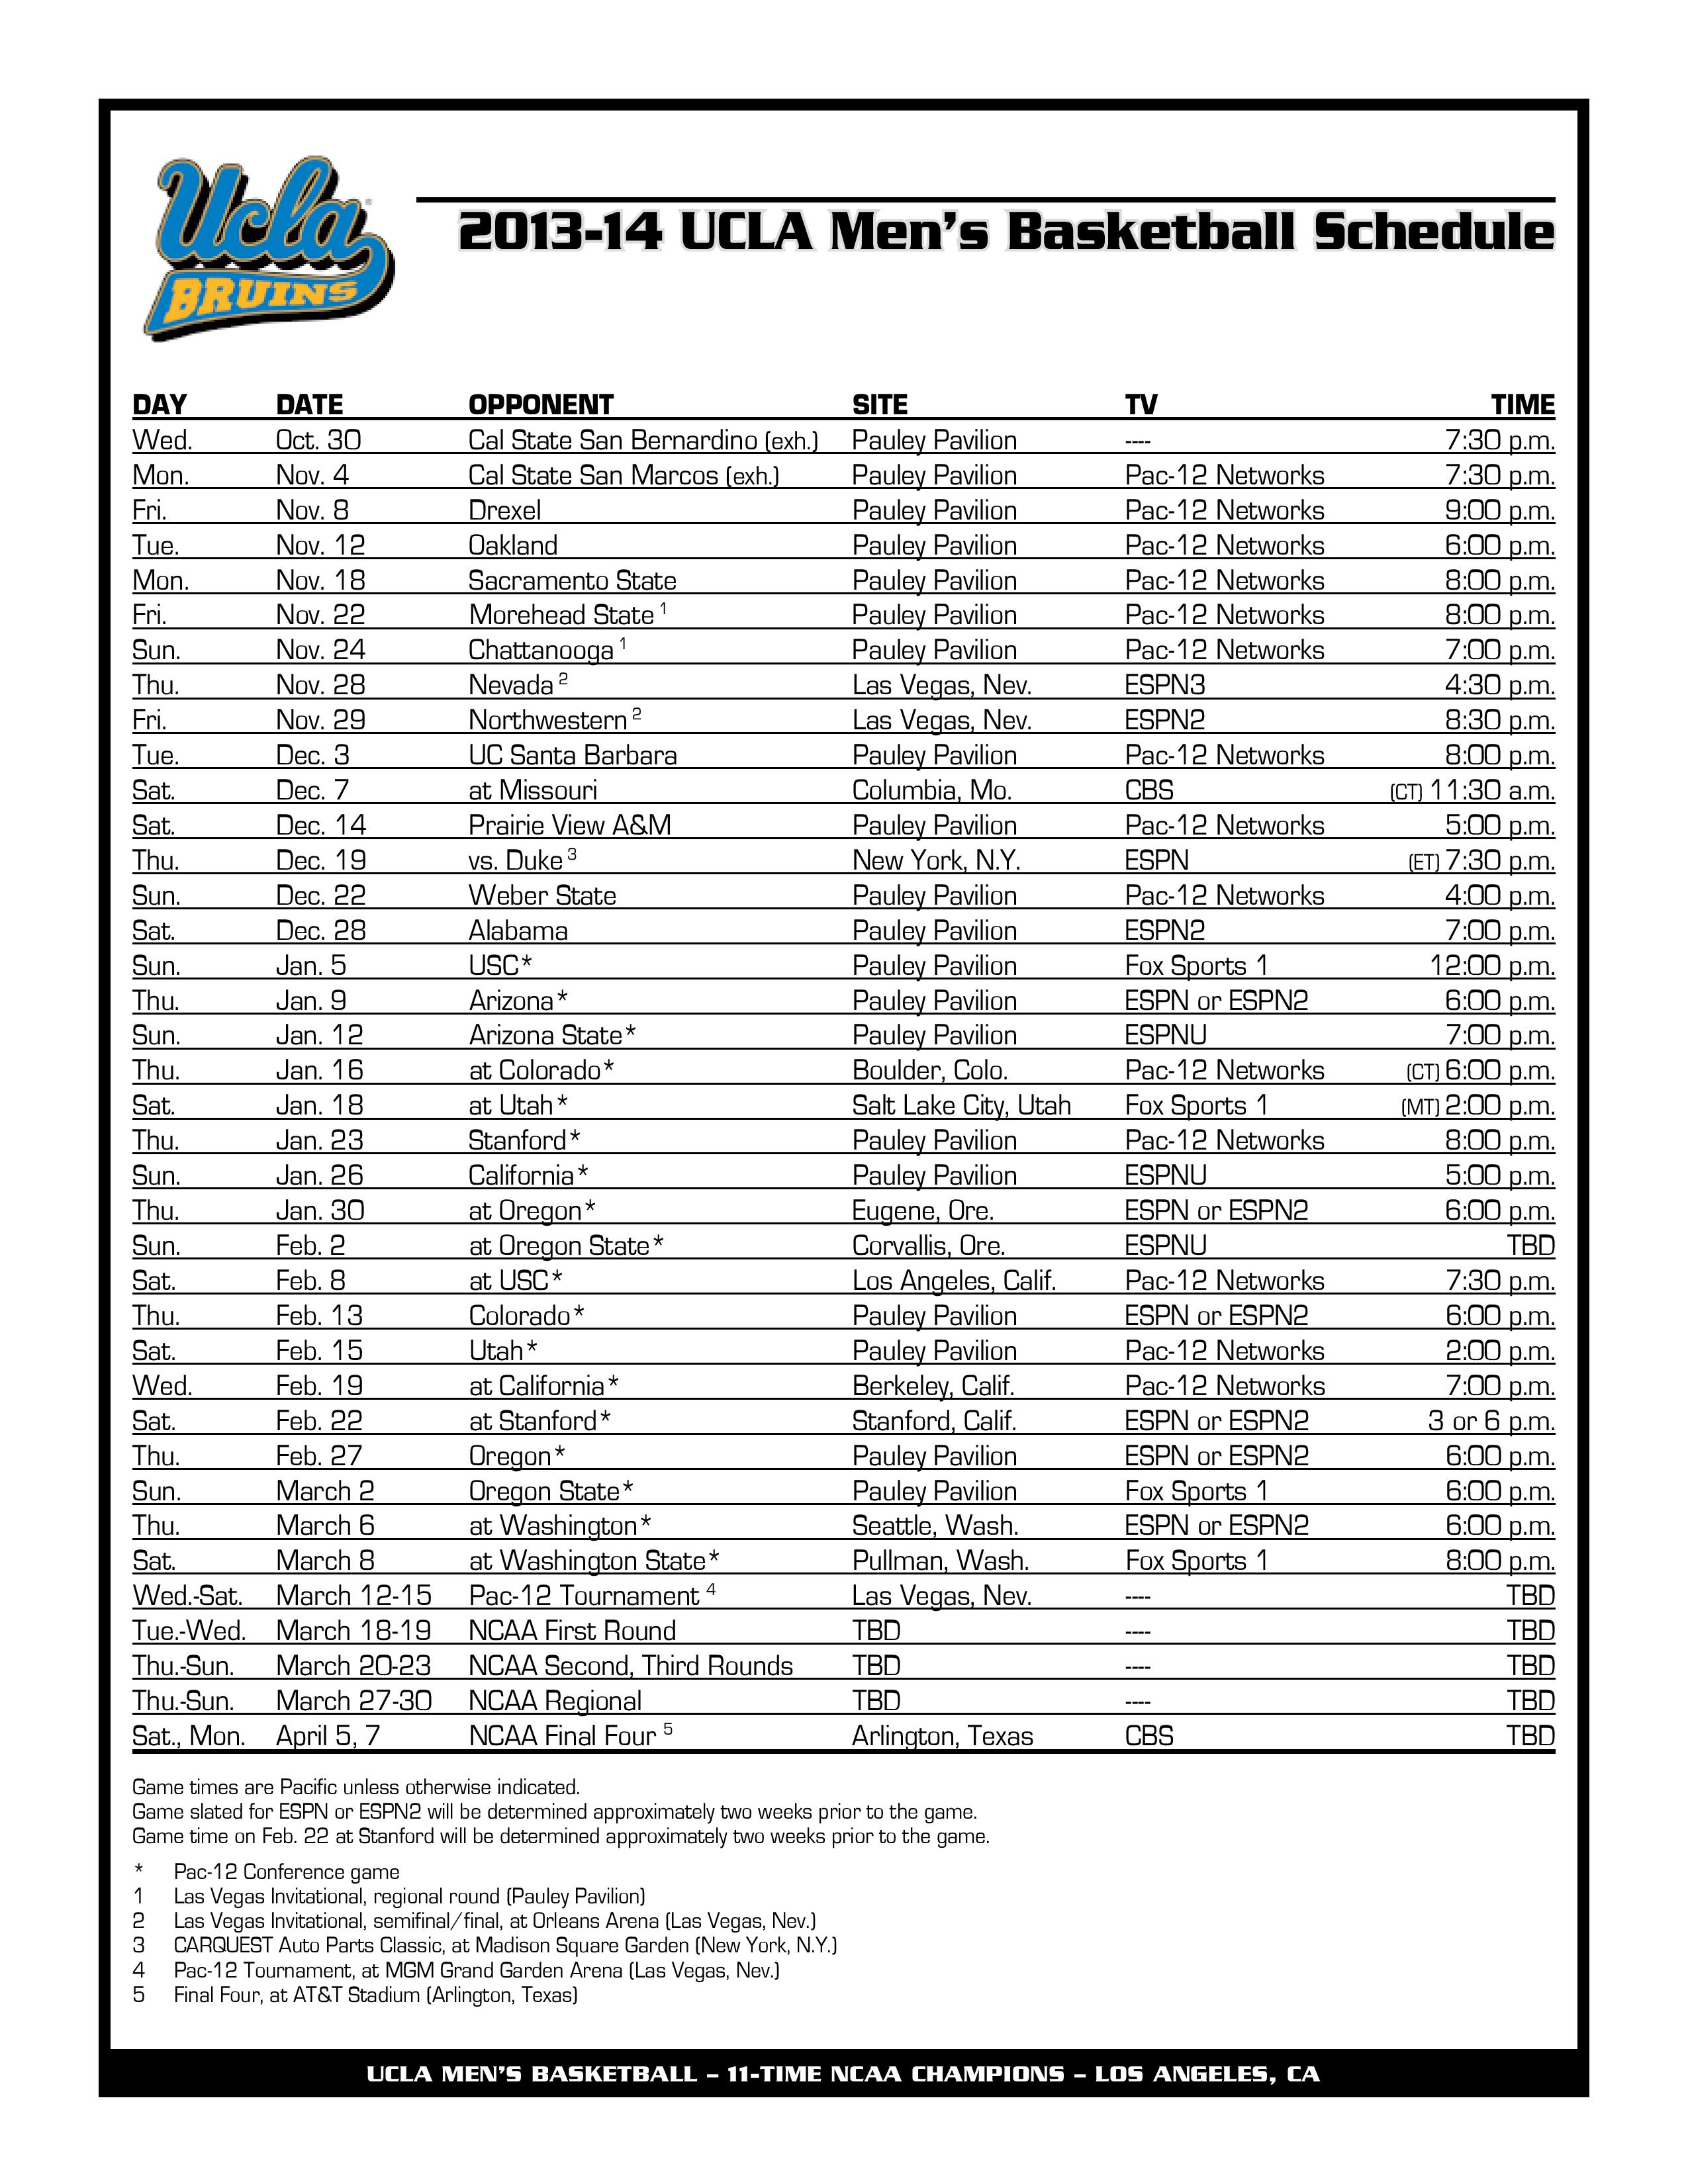 Basketball schedule | Inside UCLA with Jack Wang